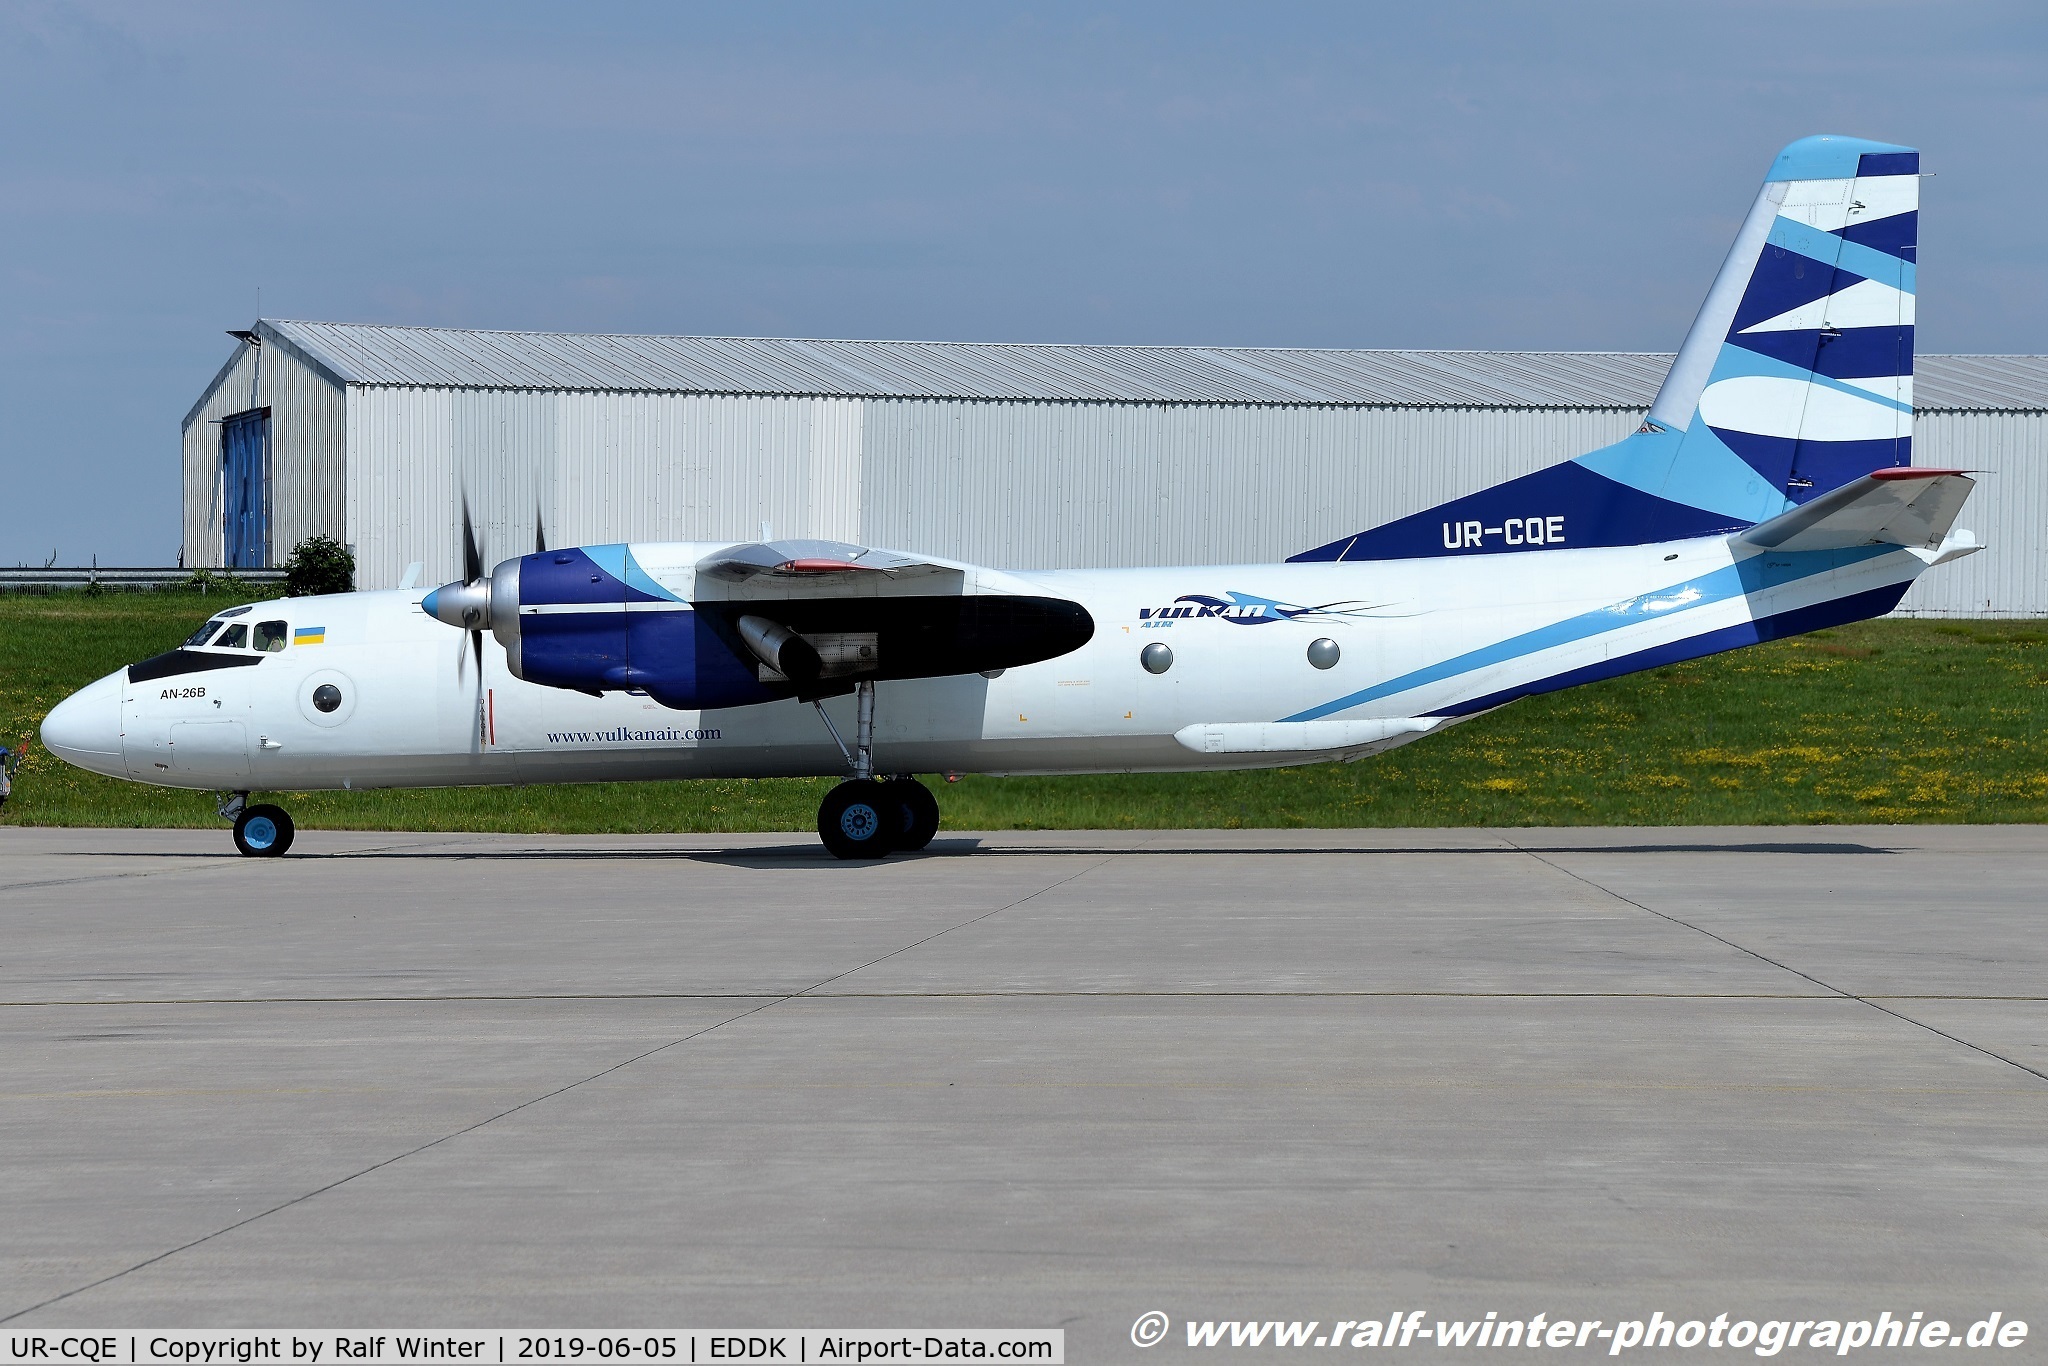 UR-CQE, 1985 Antonov An-26B C/N 14004, Antonov An-26B - VKA Vulkan Air - 57314004 - UR-CQE - 05.06.2019 - CGN